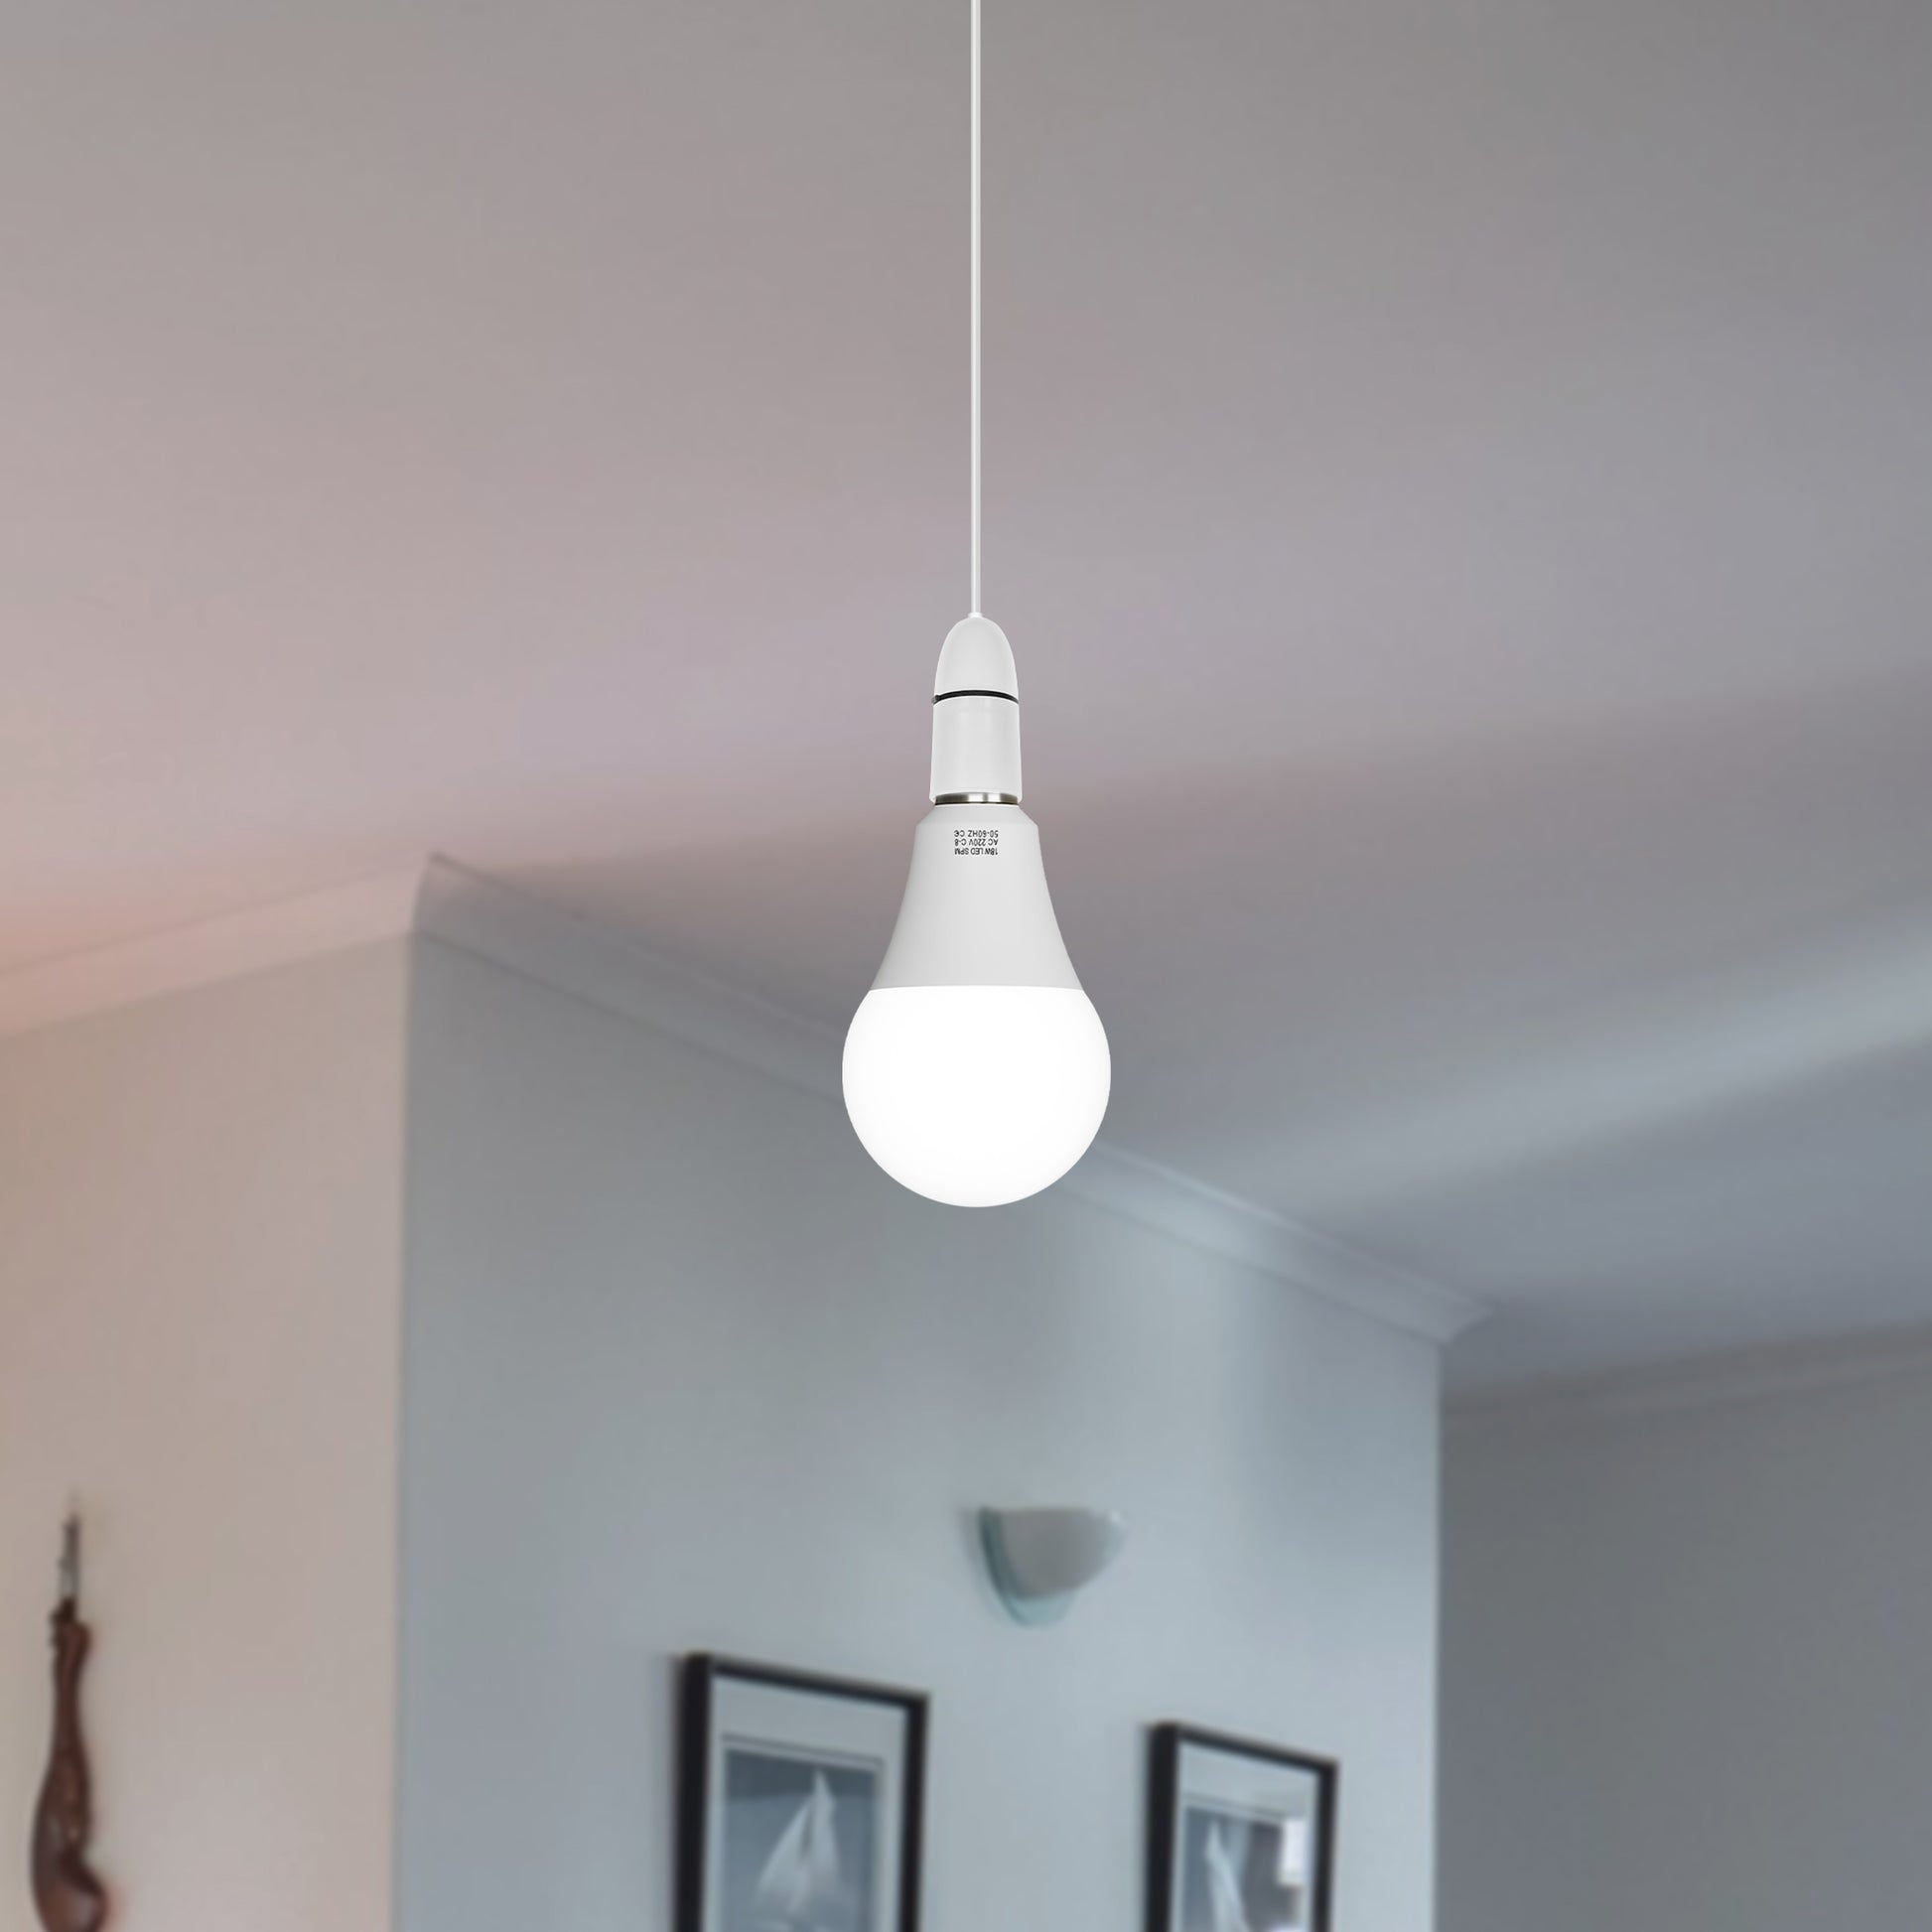 ceiling light bulbs energy efficient light bulb